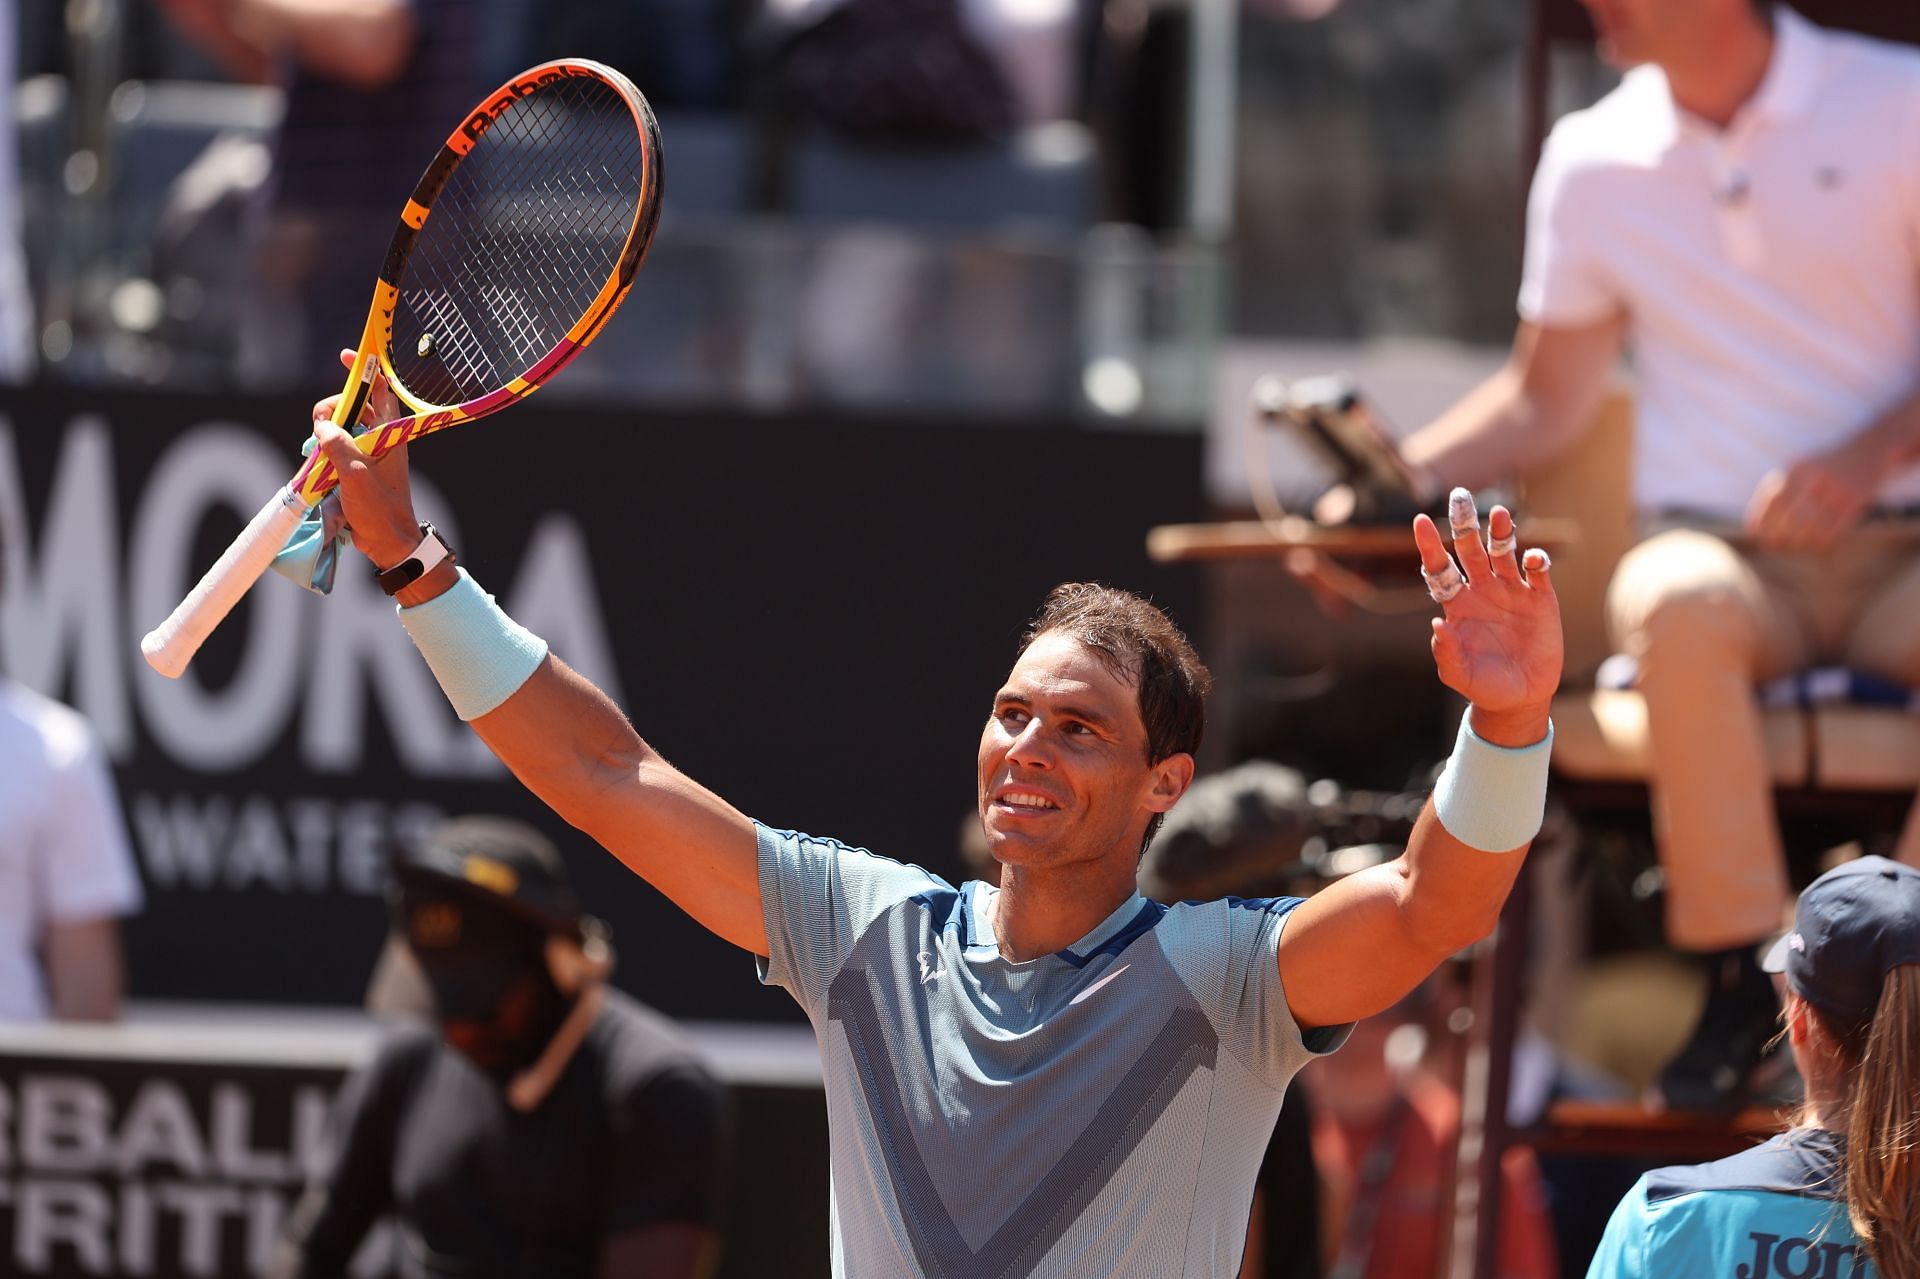 Rafael Nadal at the 2022 Italian Open.